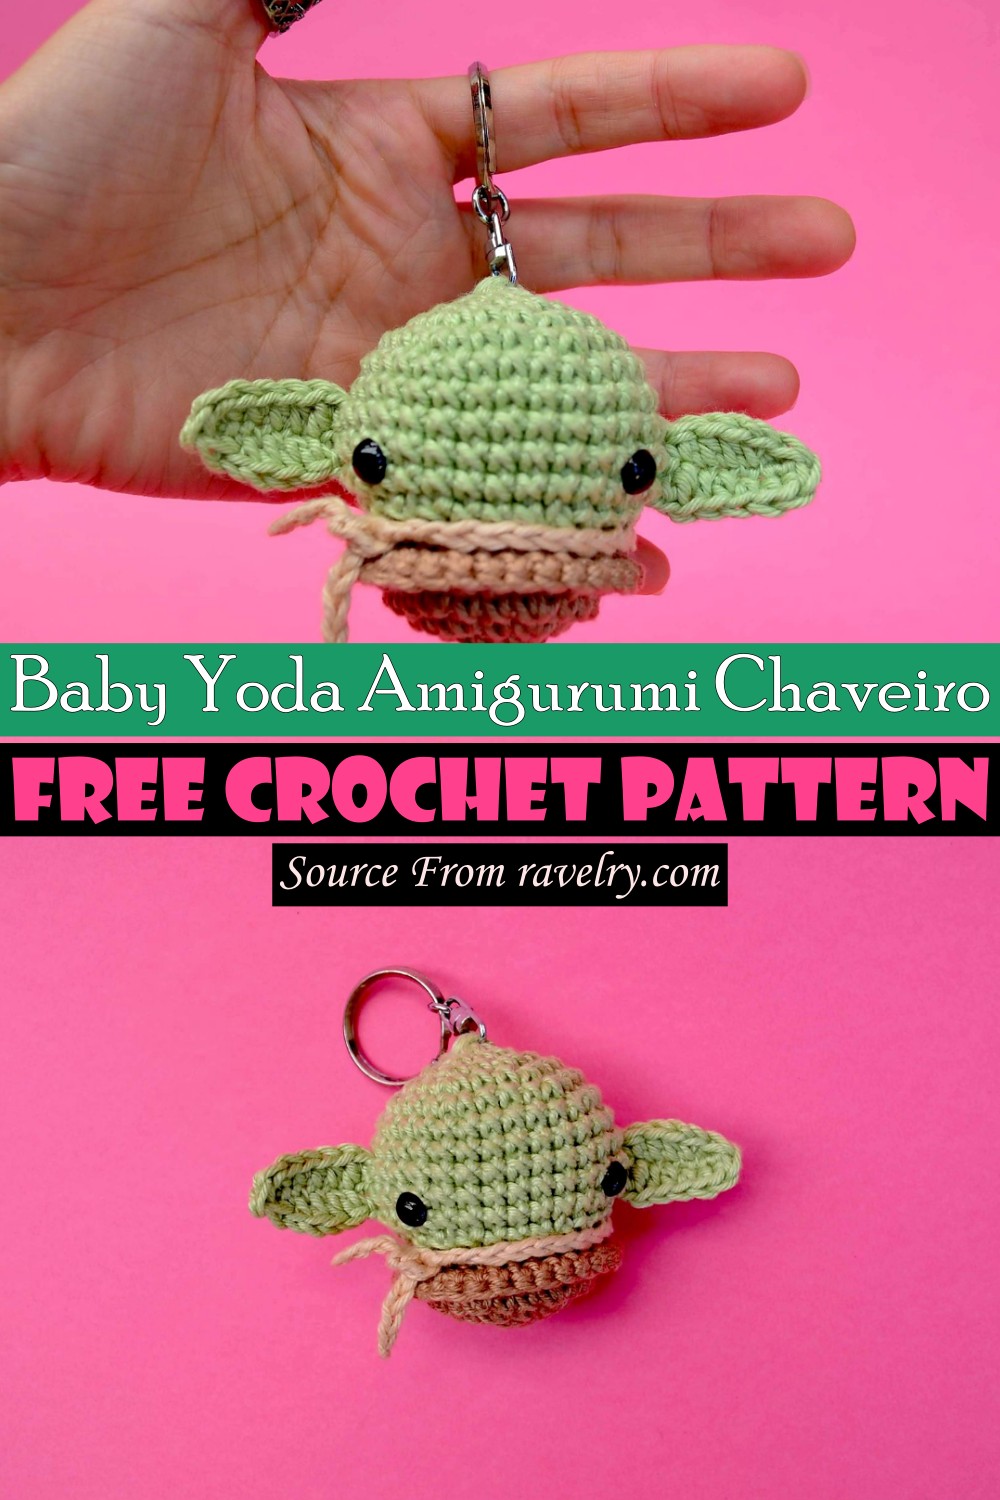 Free Crochet Baby Yoda Amigurumi Chaveiro Pattern